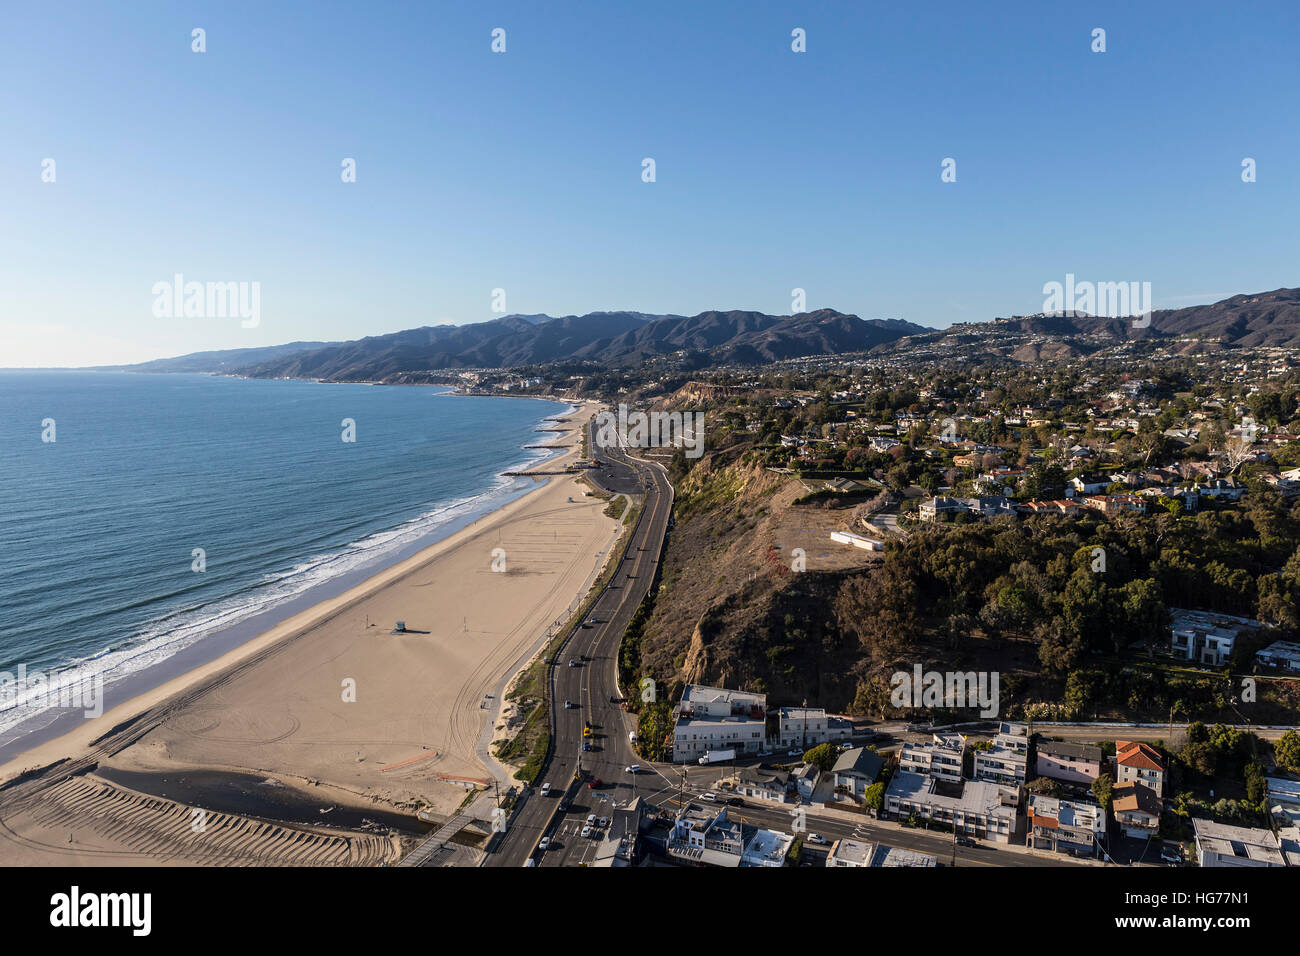 Vue aérienne de maisons, plages et montagnes dans la région de Pacific Palisades à Los Angeles en Californie. Banque D'Images